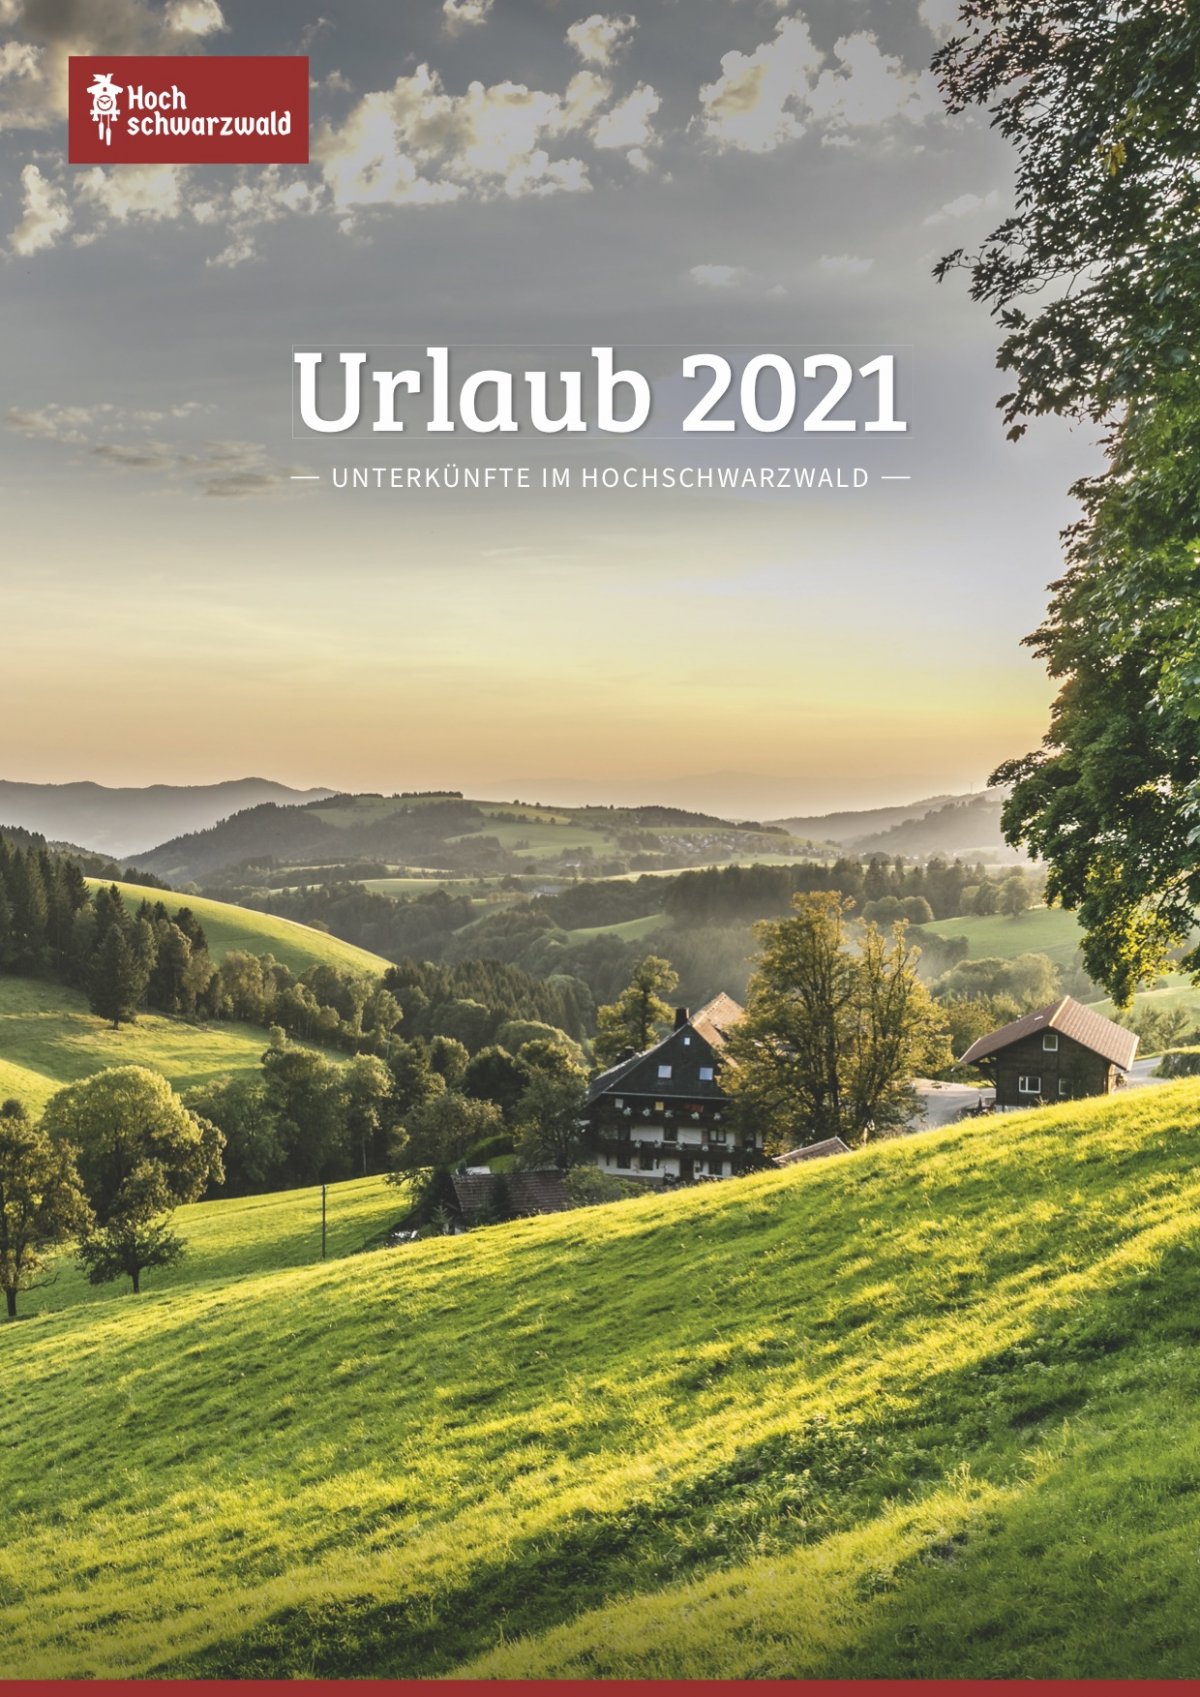 Ortsbeschreibungen im Gastgeberverzeichnis Hochschwarzwald Tourismus, Titel 2021